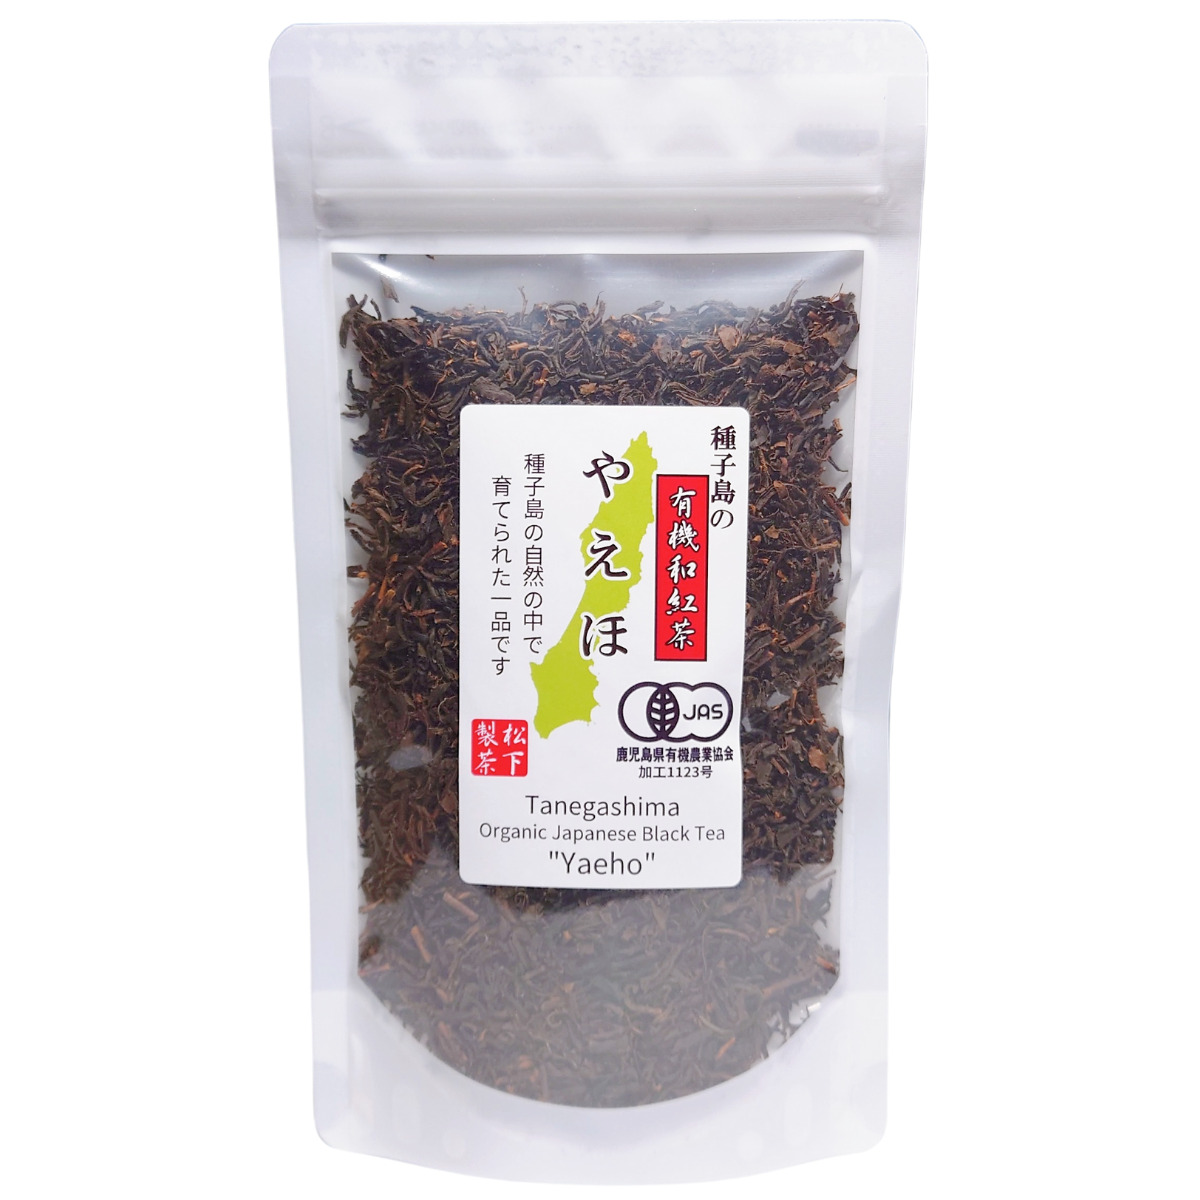 種子島の有機和紅茶『やえほ』 茶葉(リーフ) 60g 松下製茶